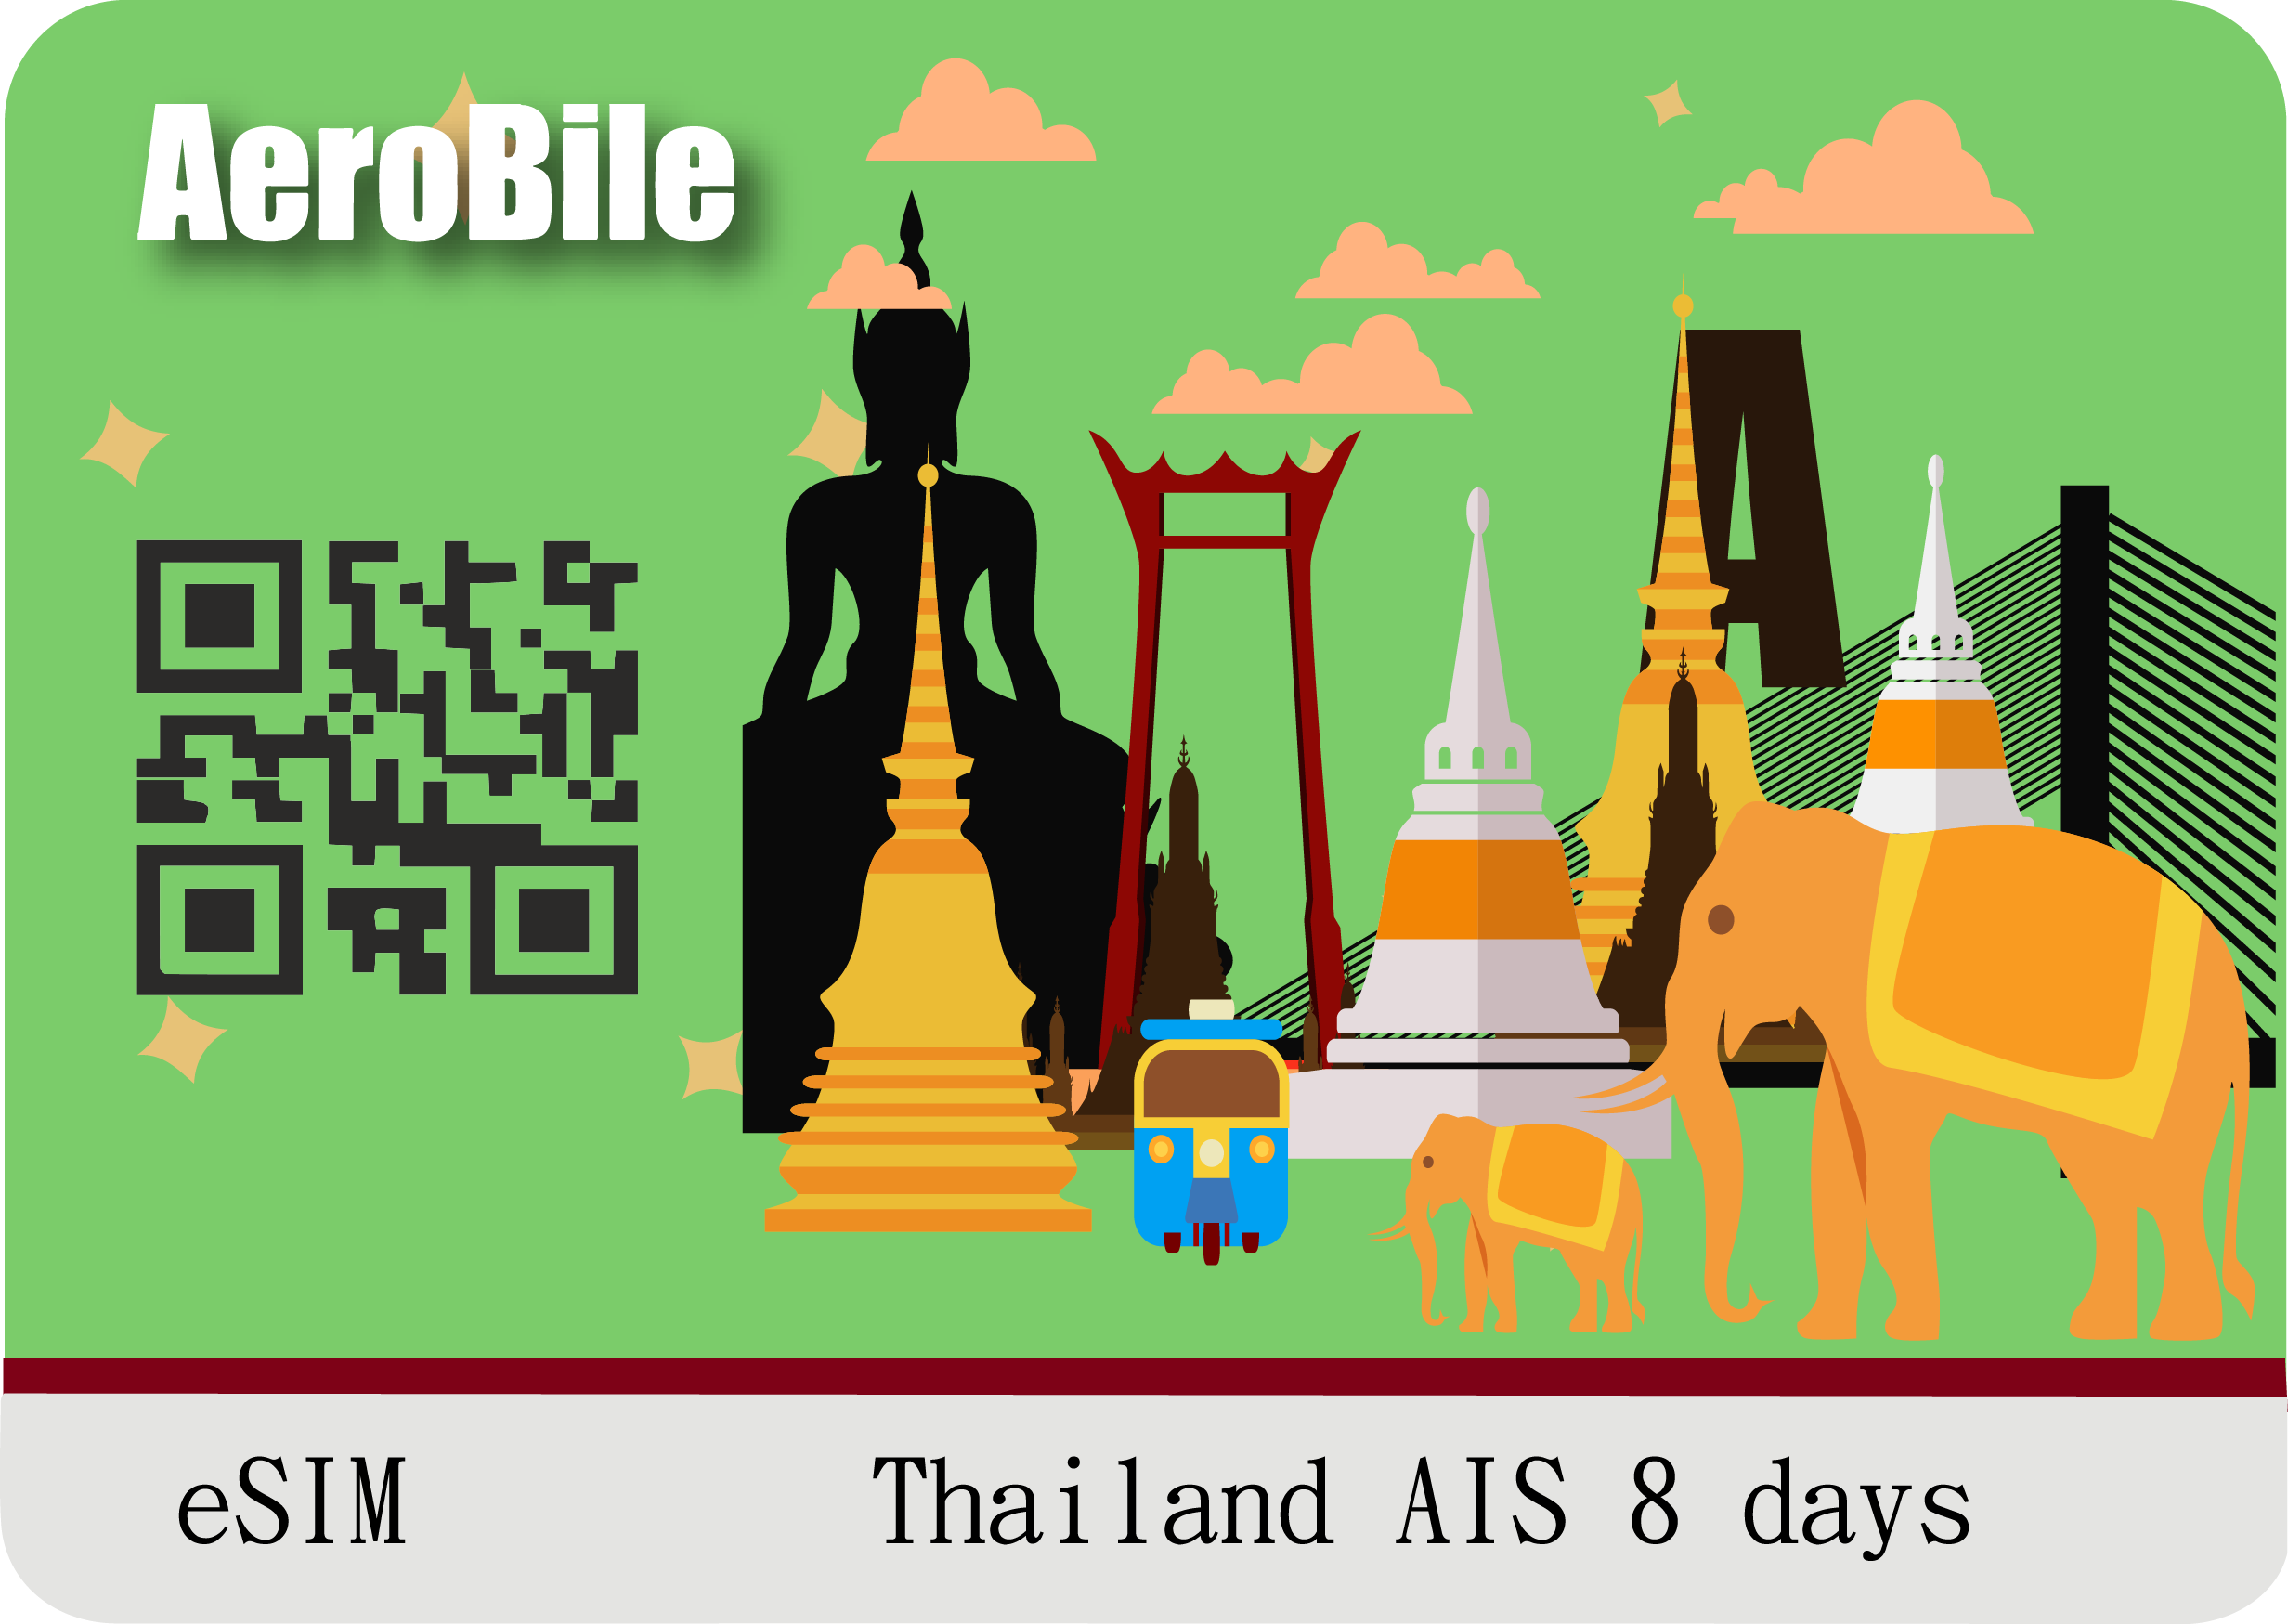 eSIM Thailand AIS 8 days